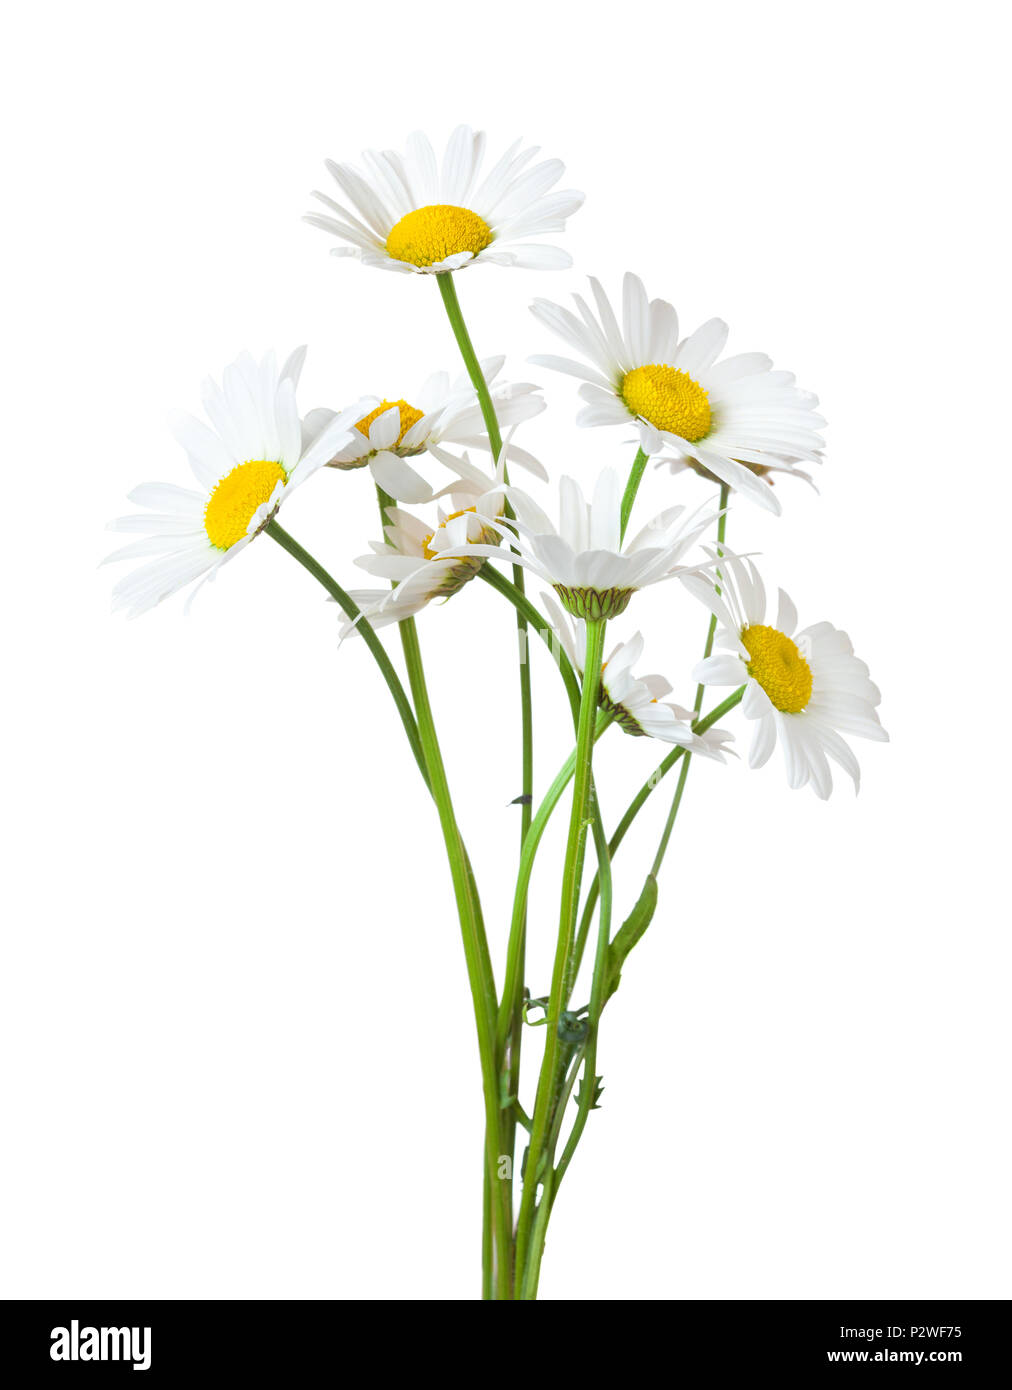 Blumenstrauß aus Gänseblümchen (Ox-Eye Daisy) auf einem weißen